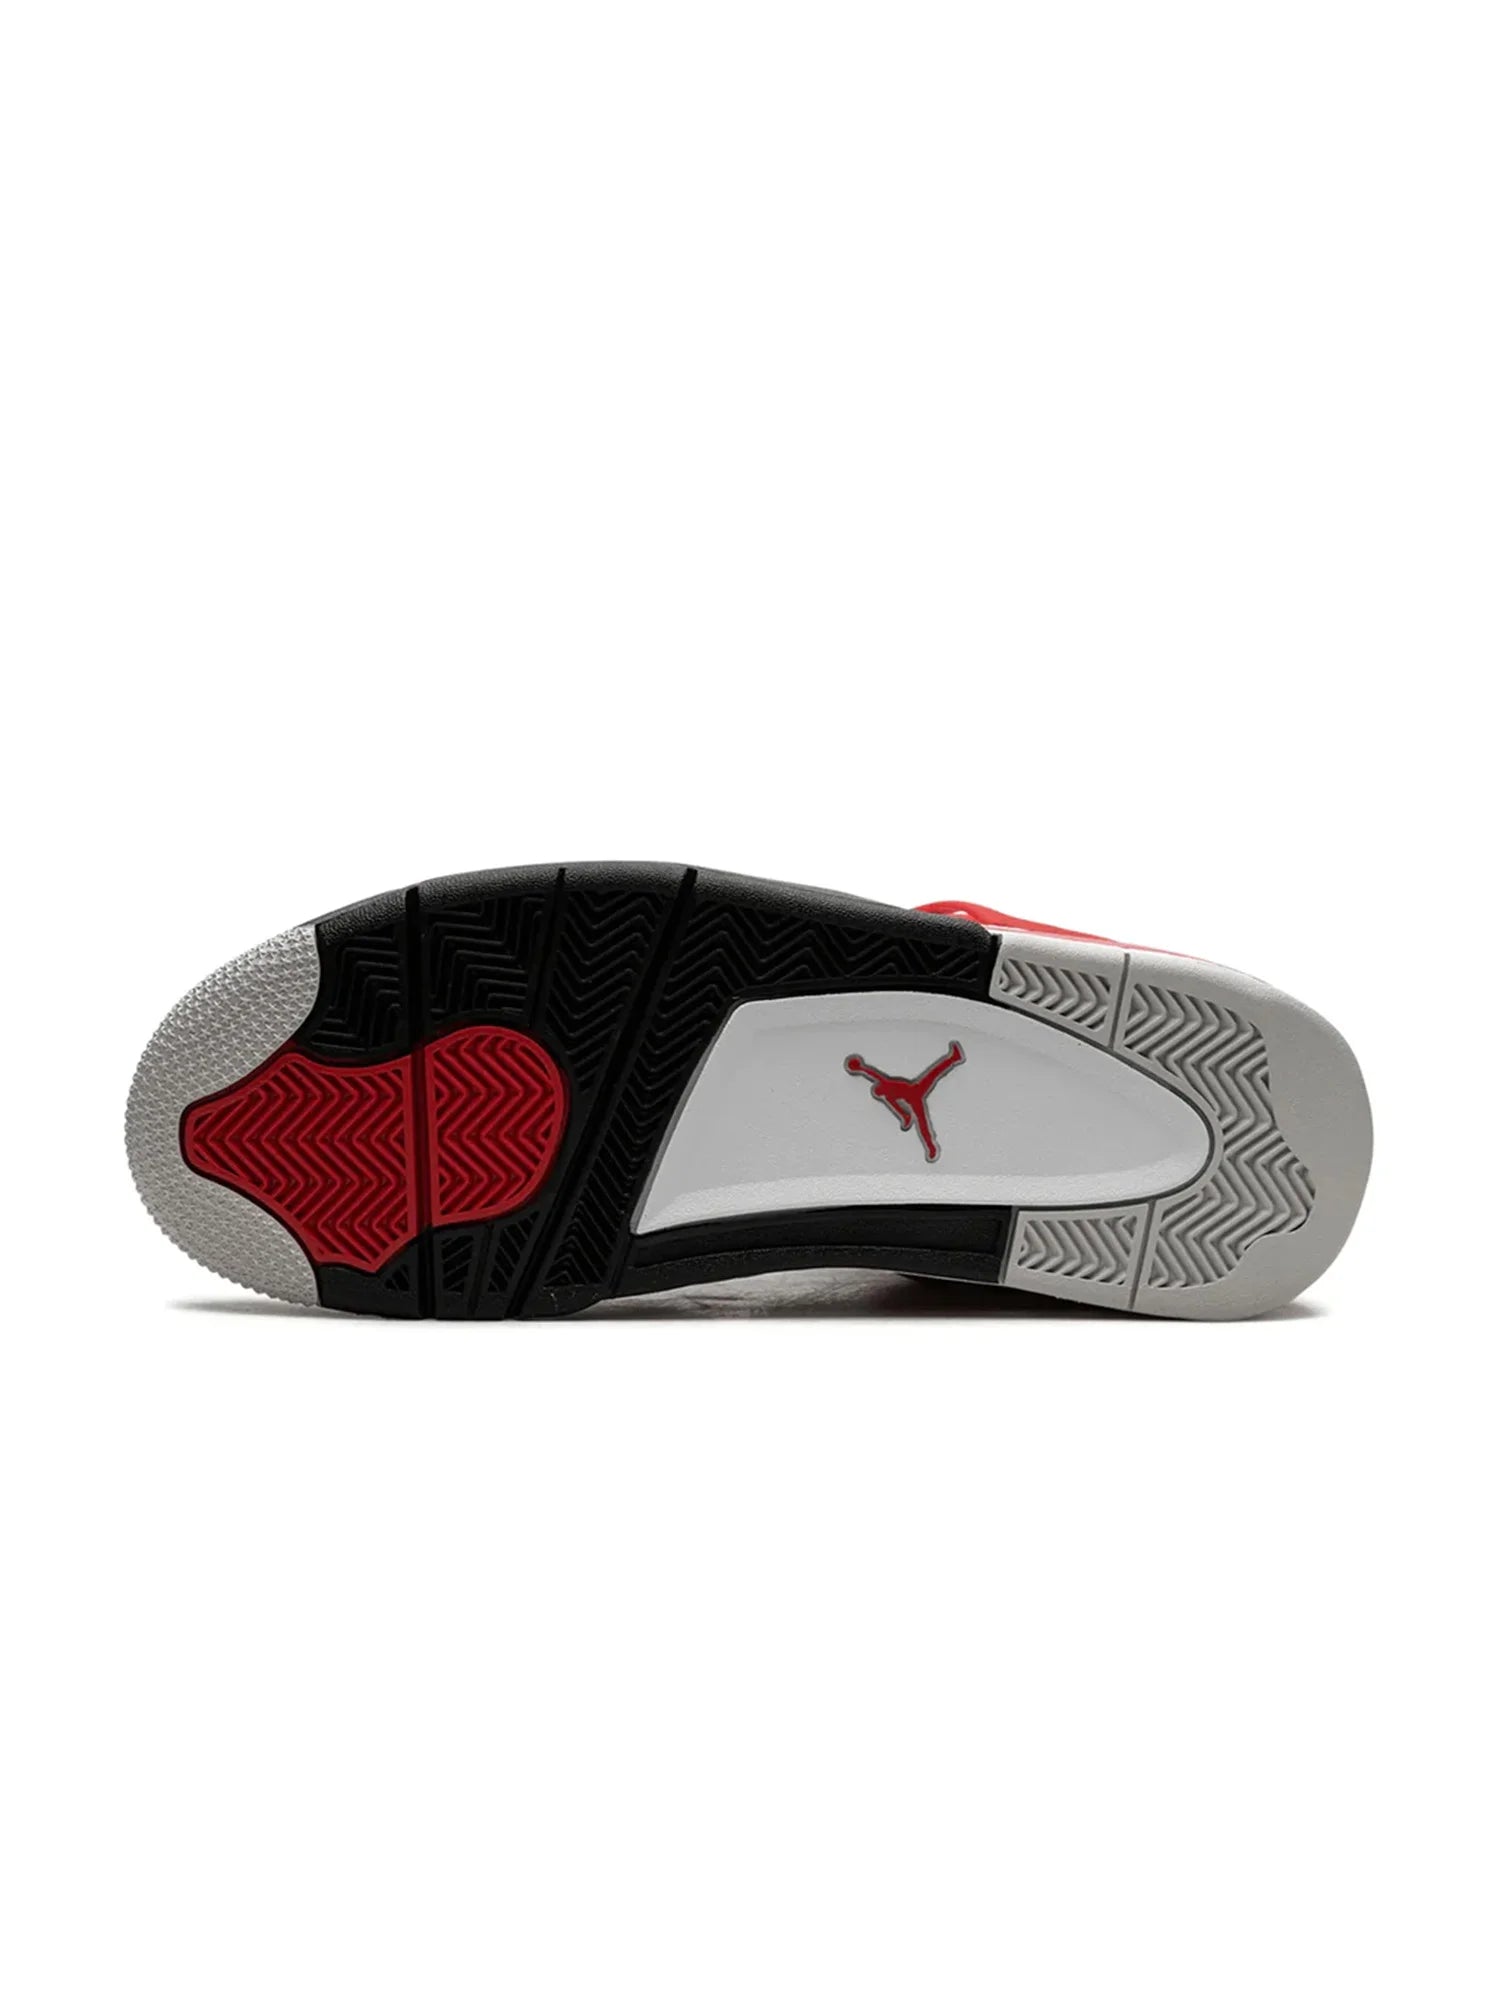 Nike Air Jordan 4 Red Cements